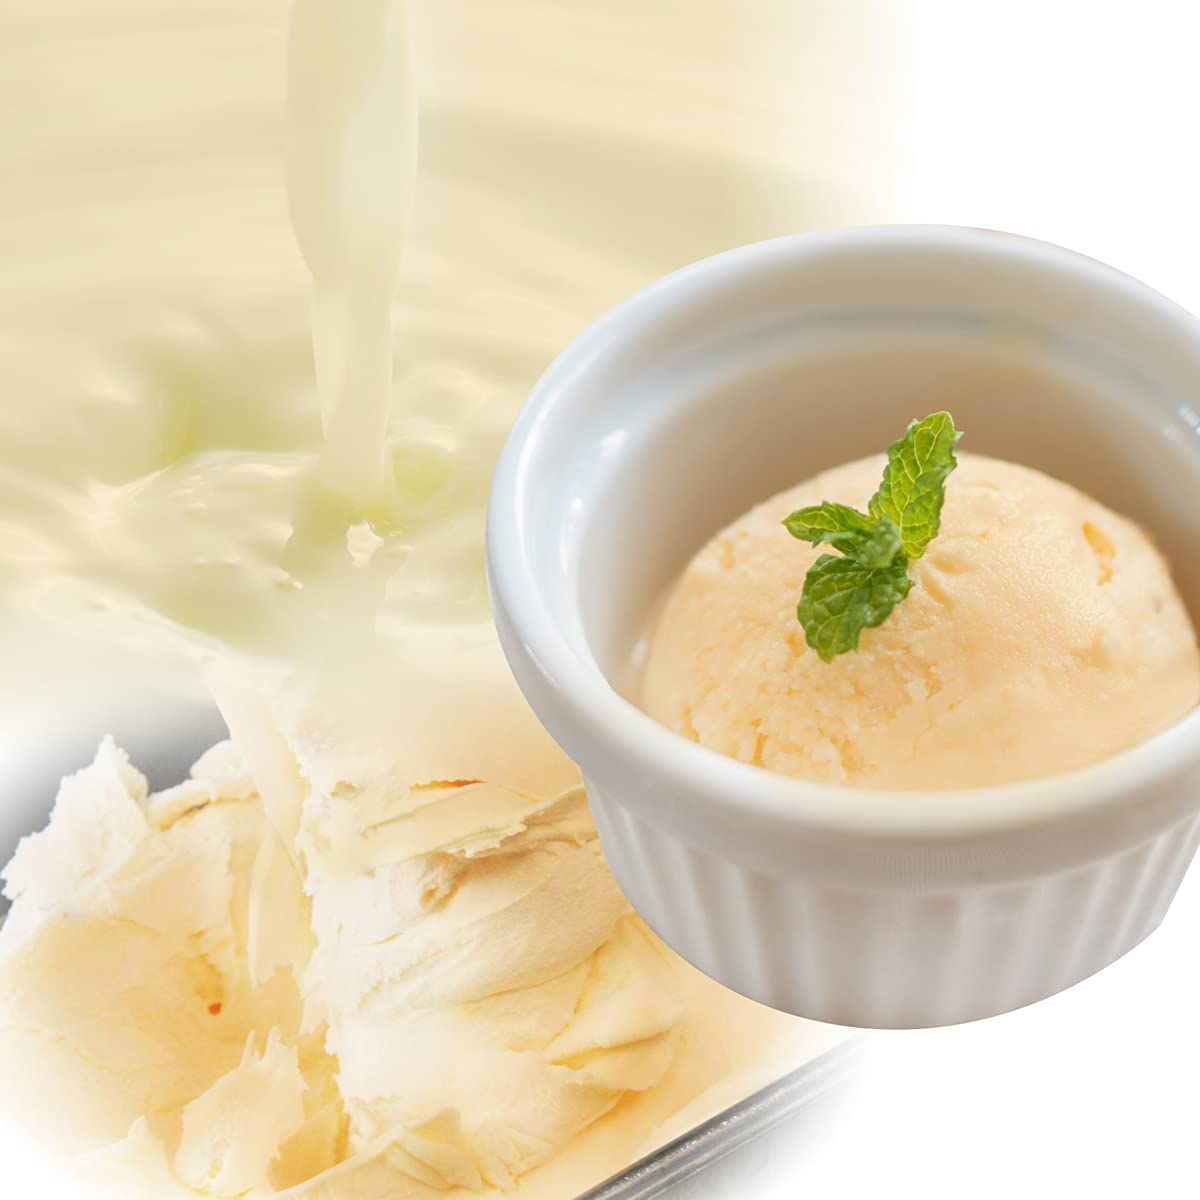  美味いとこどり アイス大国 ニュージーランド産 業務用 高級 アイスクリーム 2000ml (バニラ) 濃厚バニラ ※フルーツマイスター推奨